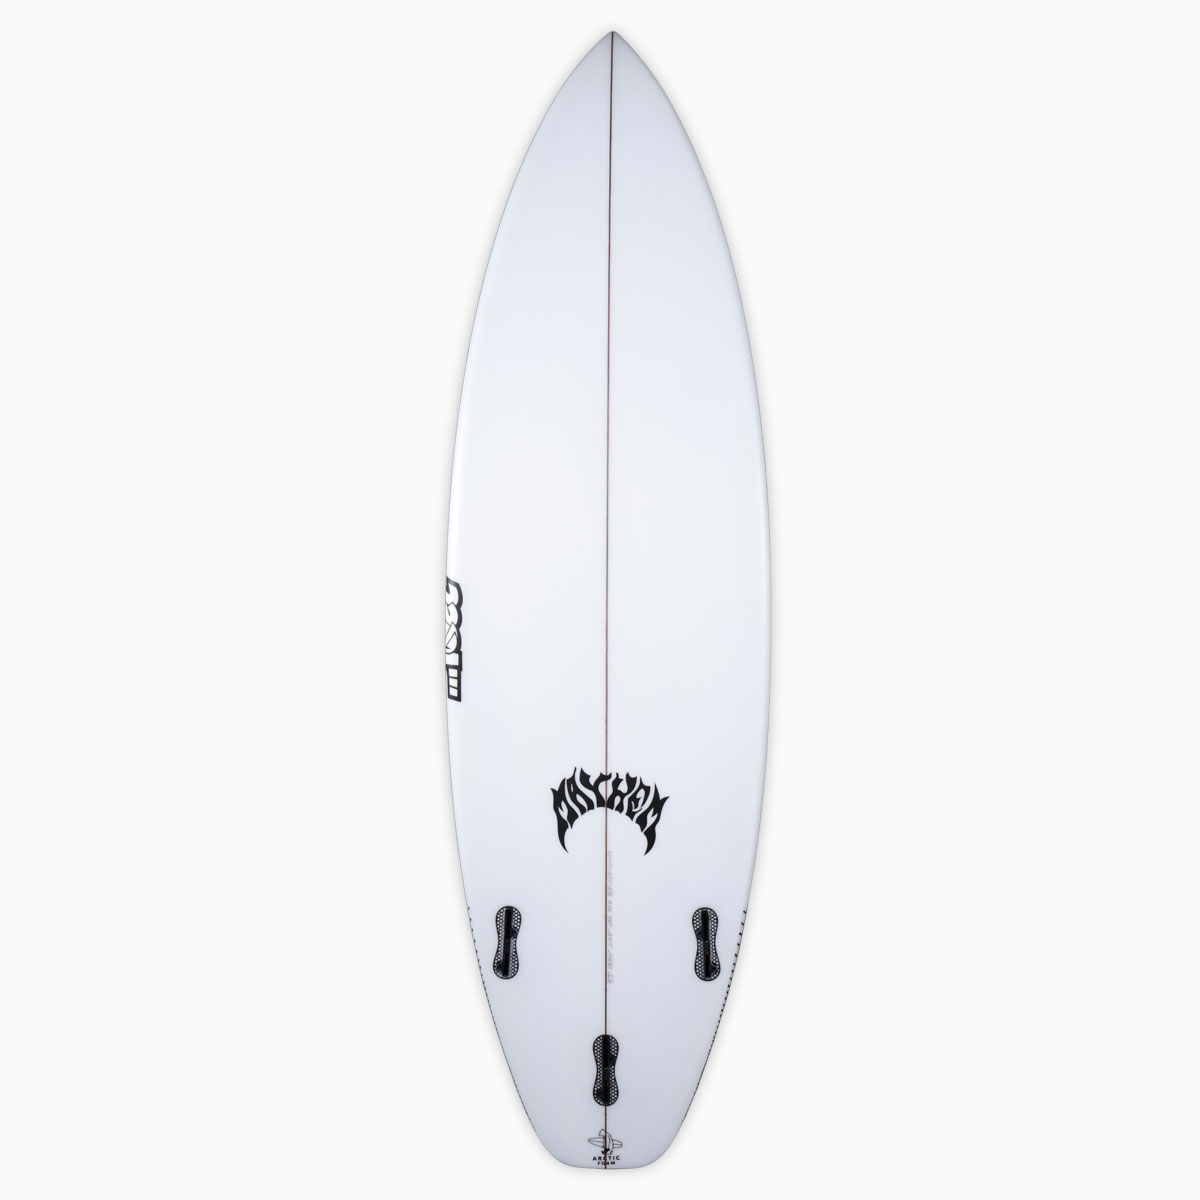 SurfBoardNet / ブランド:LOST SURFBOARDS モデル:SUB DRIVER 2.0 PRO